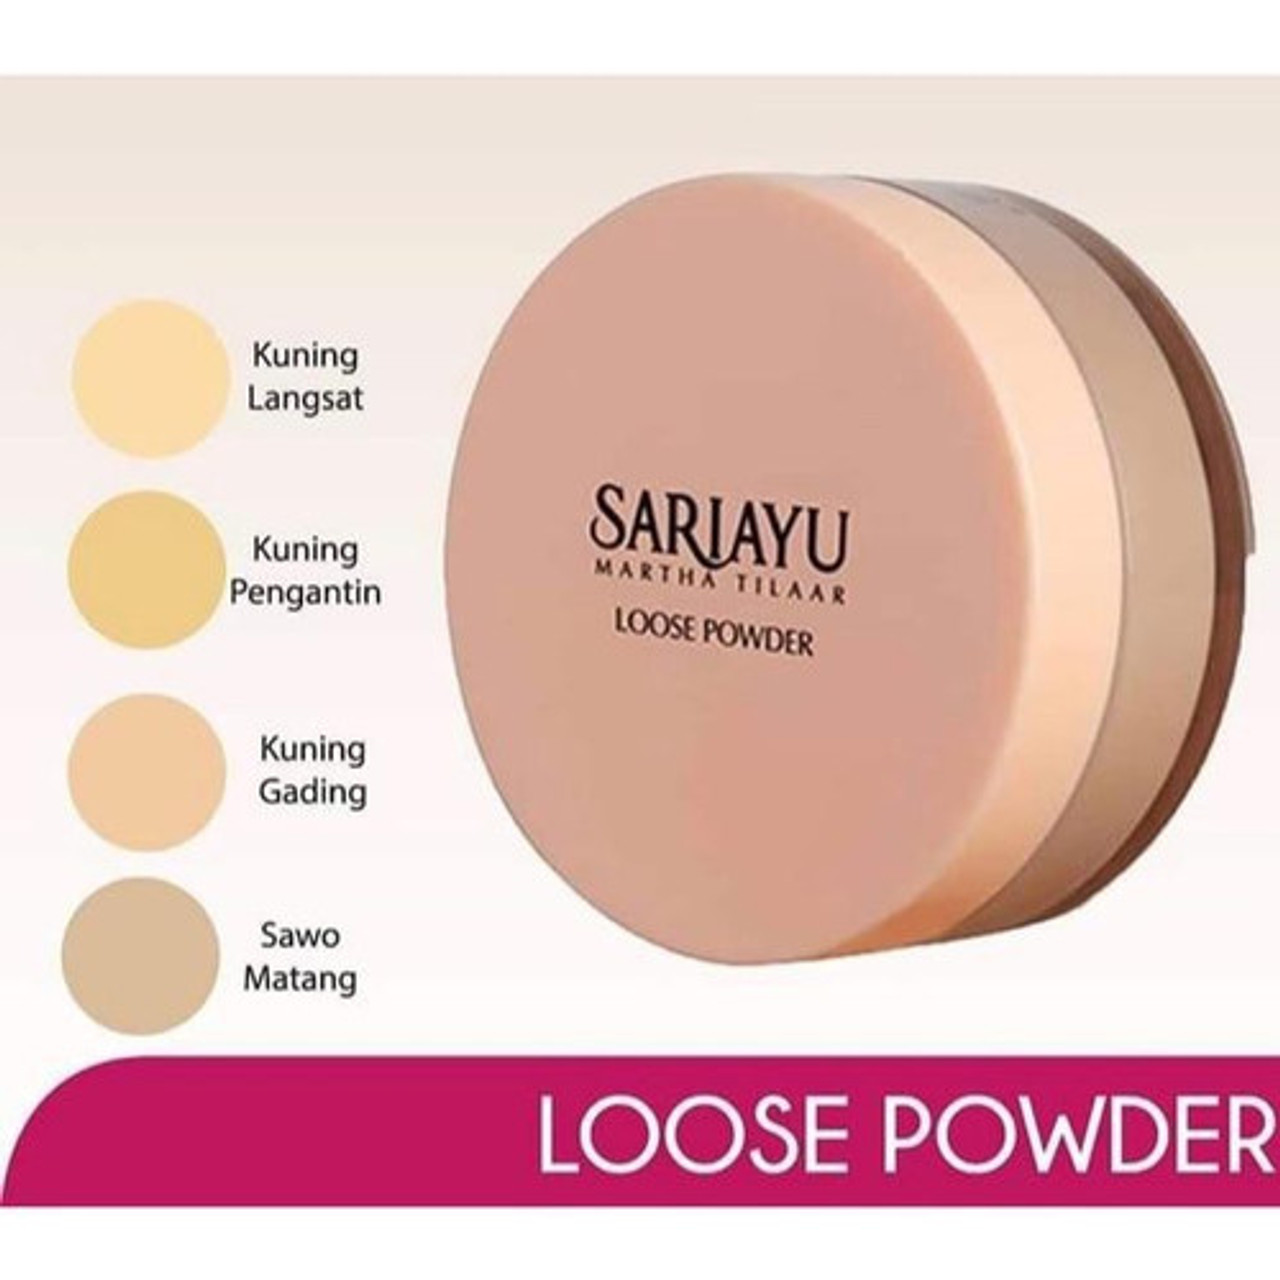 Sariayu Loose Powder Kuning Langsat 14gr